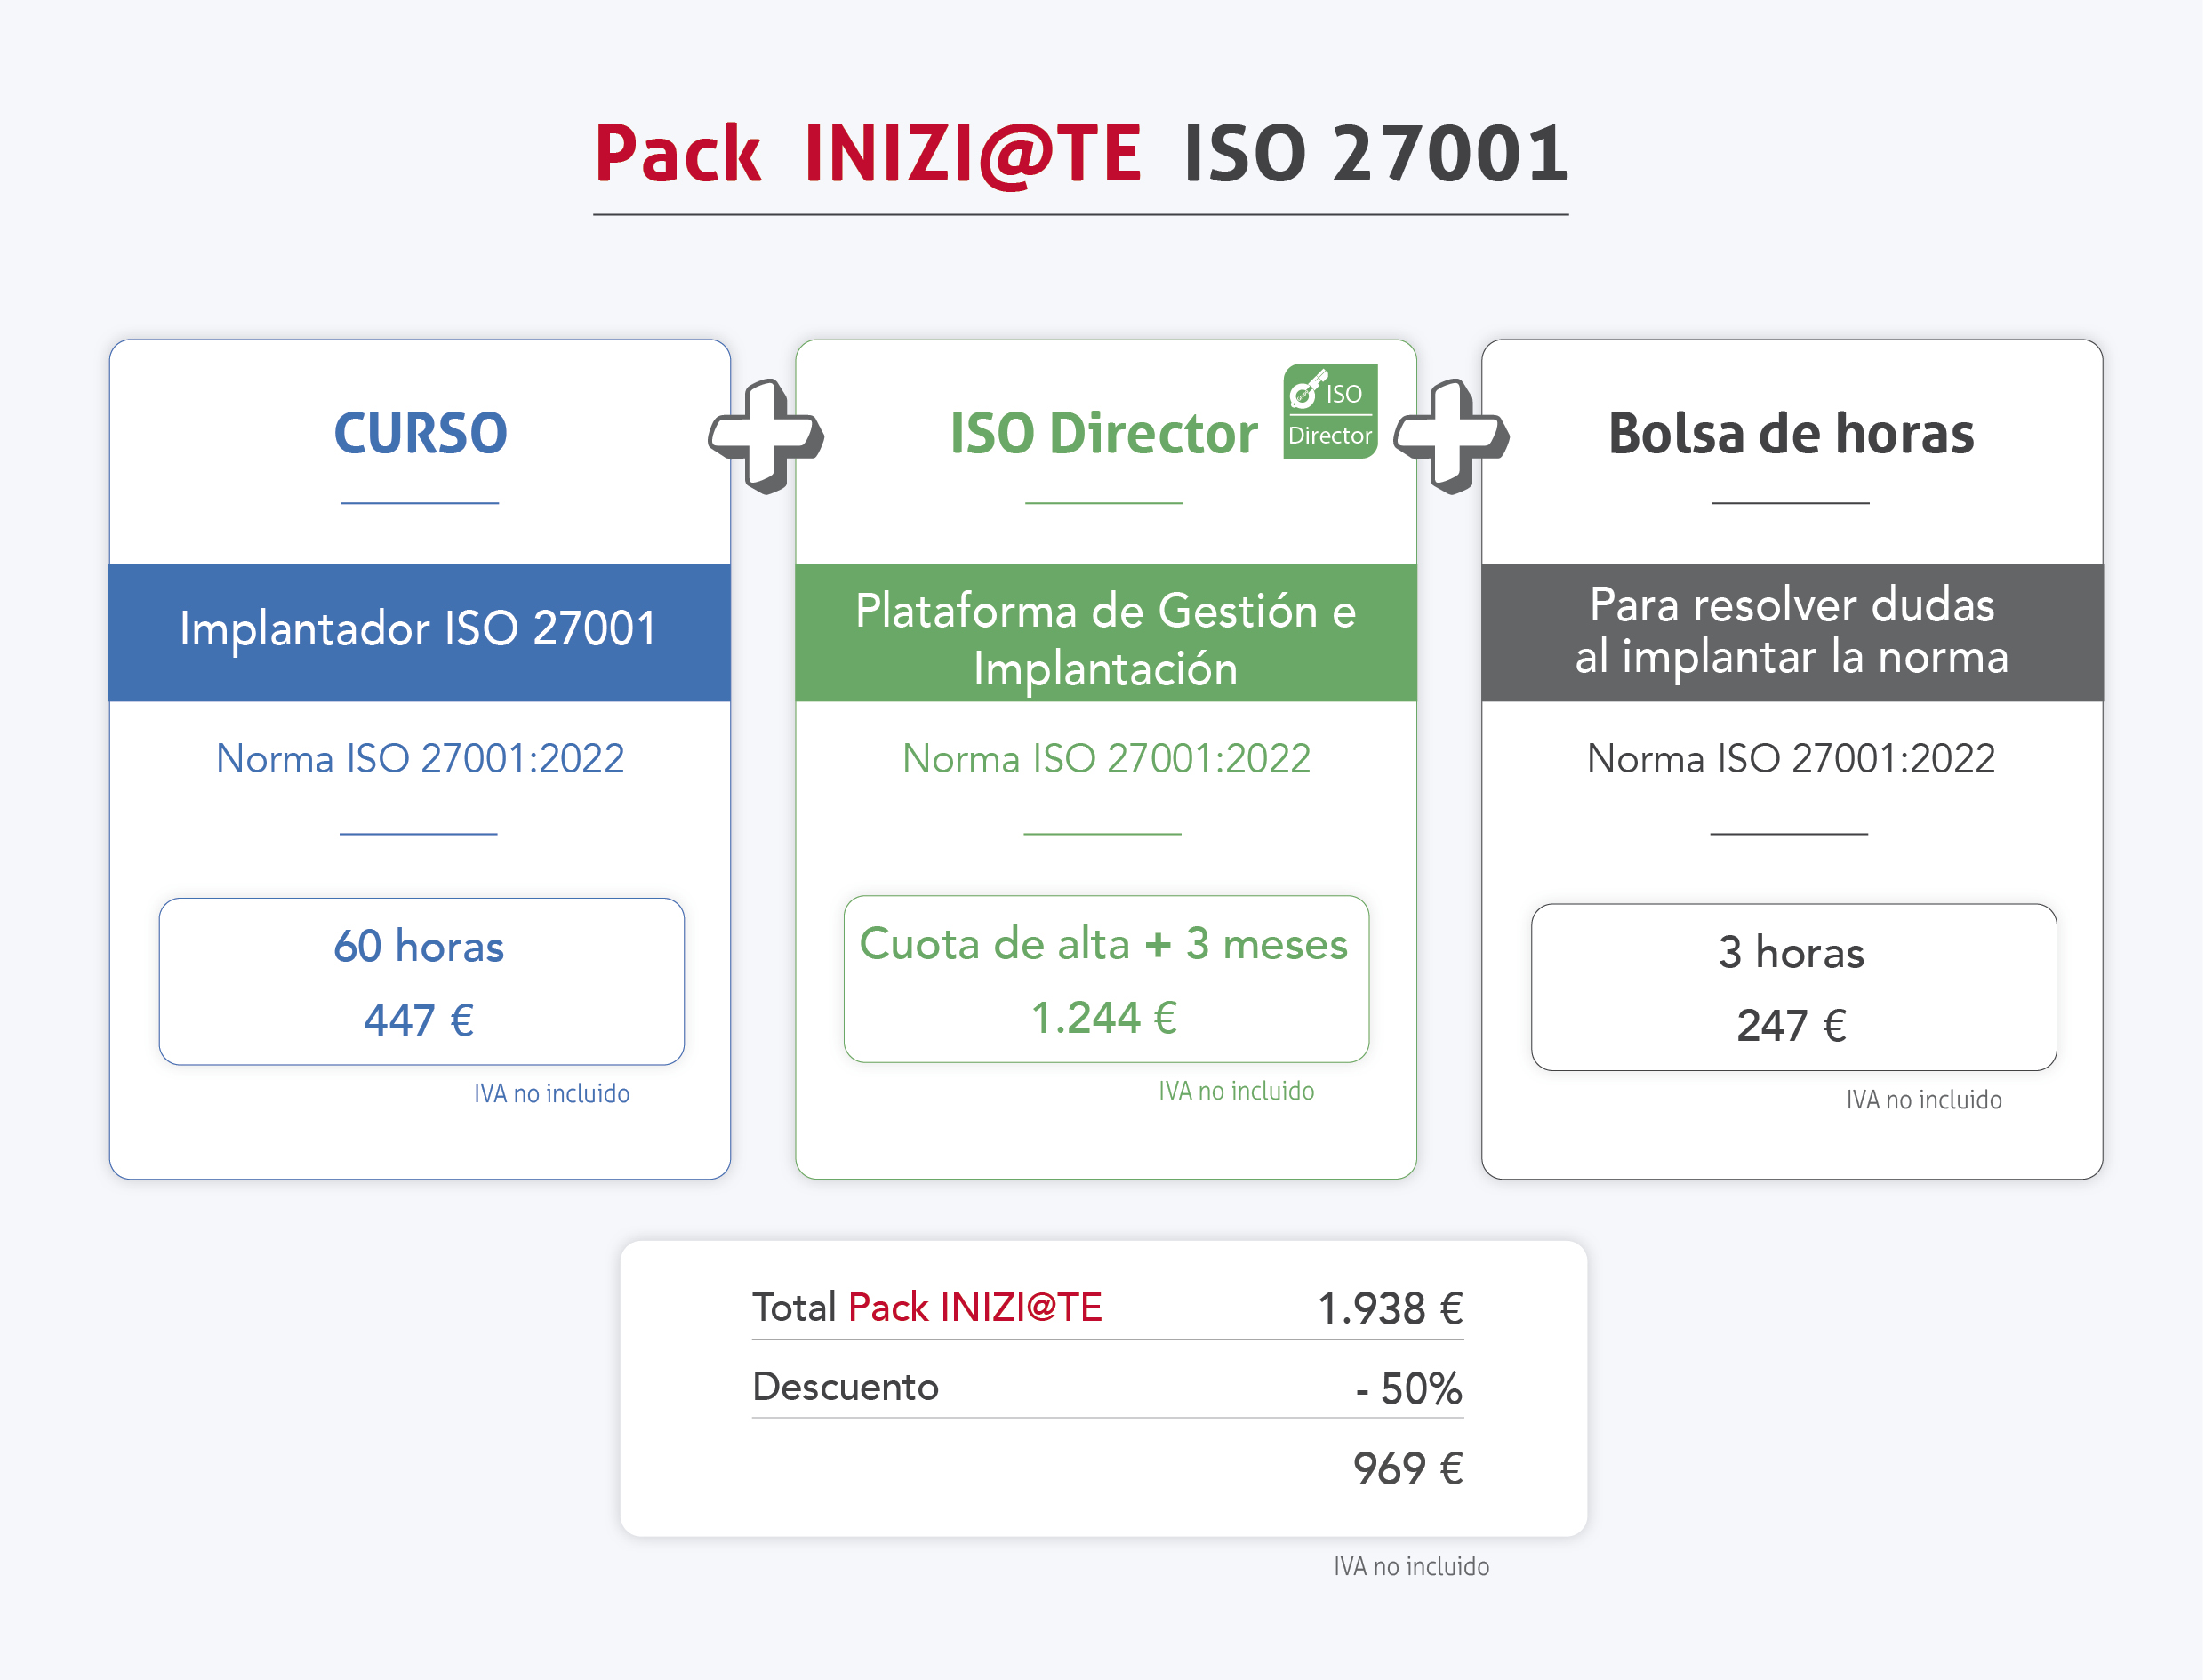 Pack Inizi@te para la implantación de la ISO 27001